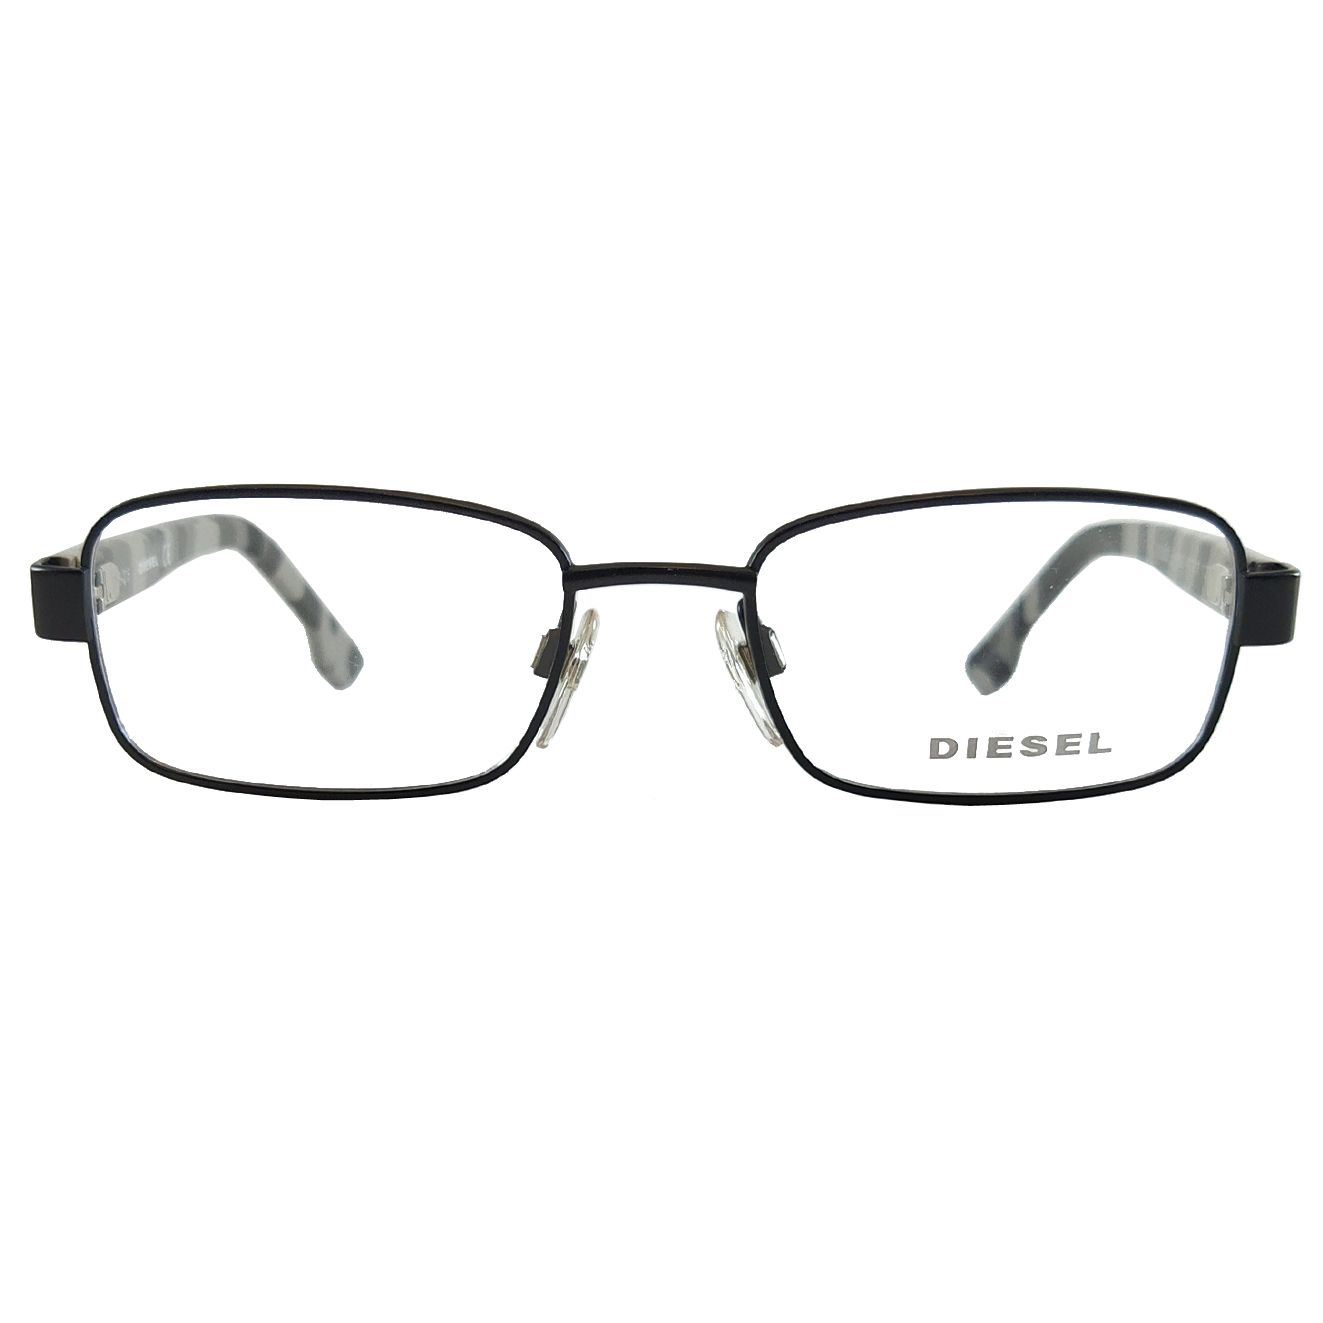 فریم عینک طبی بچگانه دیزل مدل DL522700247 -  - 3